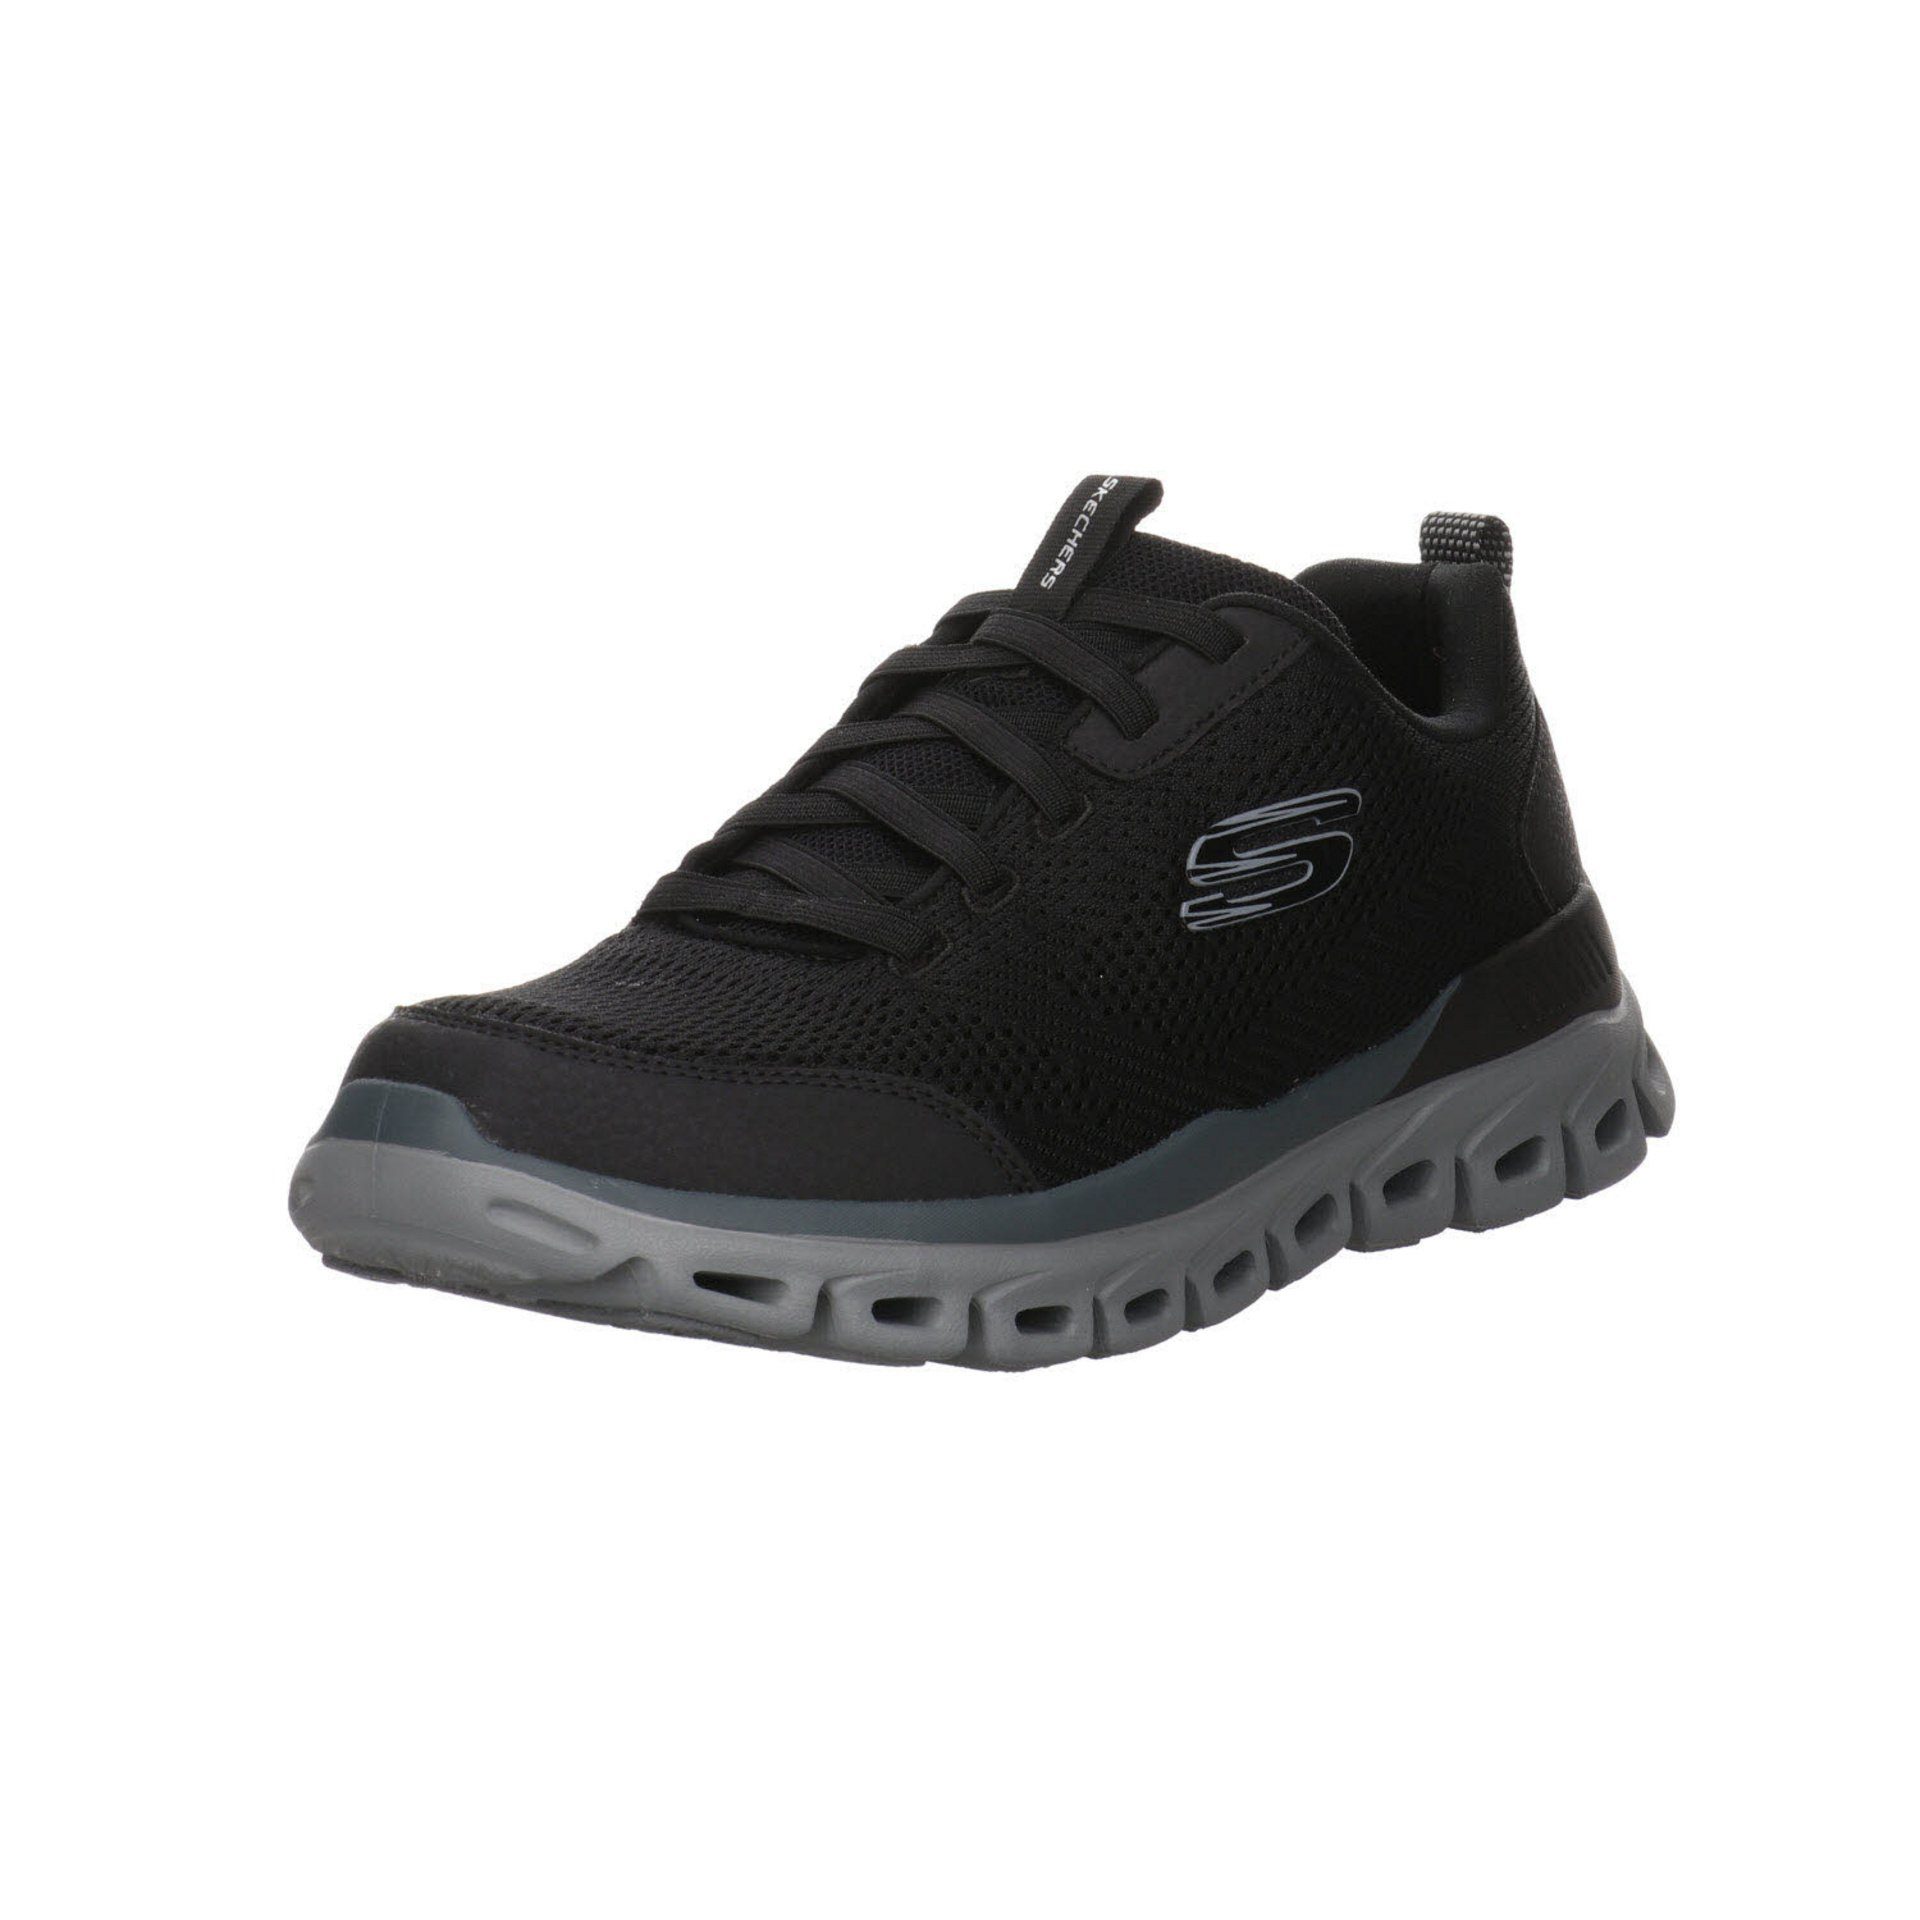 Skechers »Herren Sneaker Schuhe Glide-Step Sneaker« Sneaker  Synthetikkombination online kaufen | OTTO